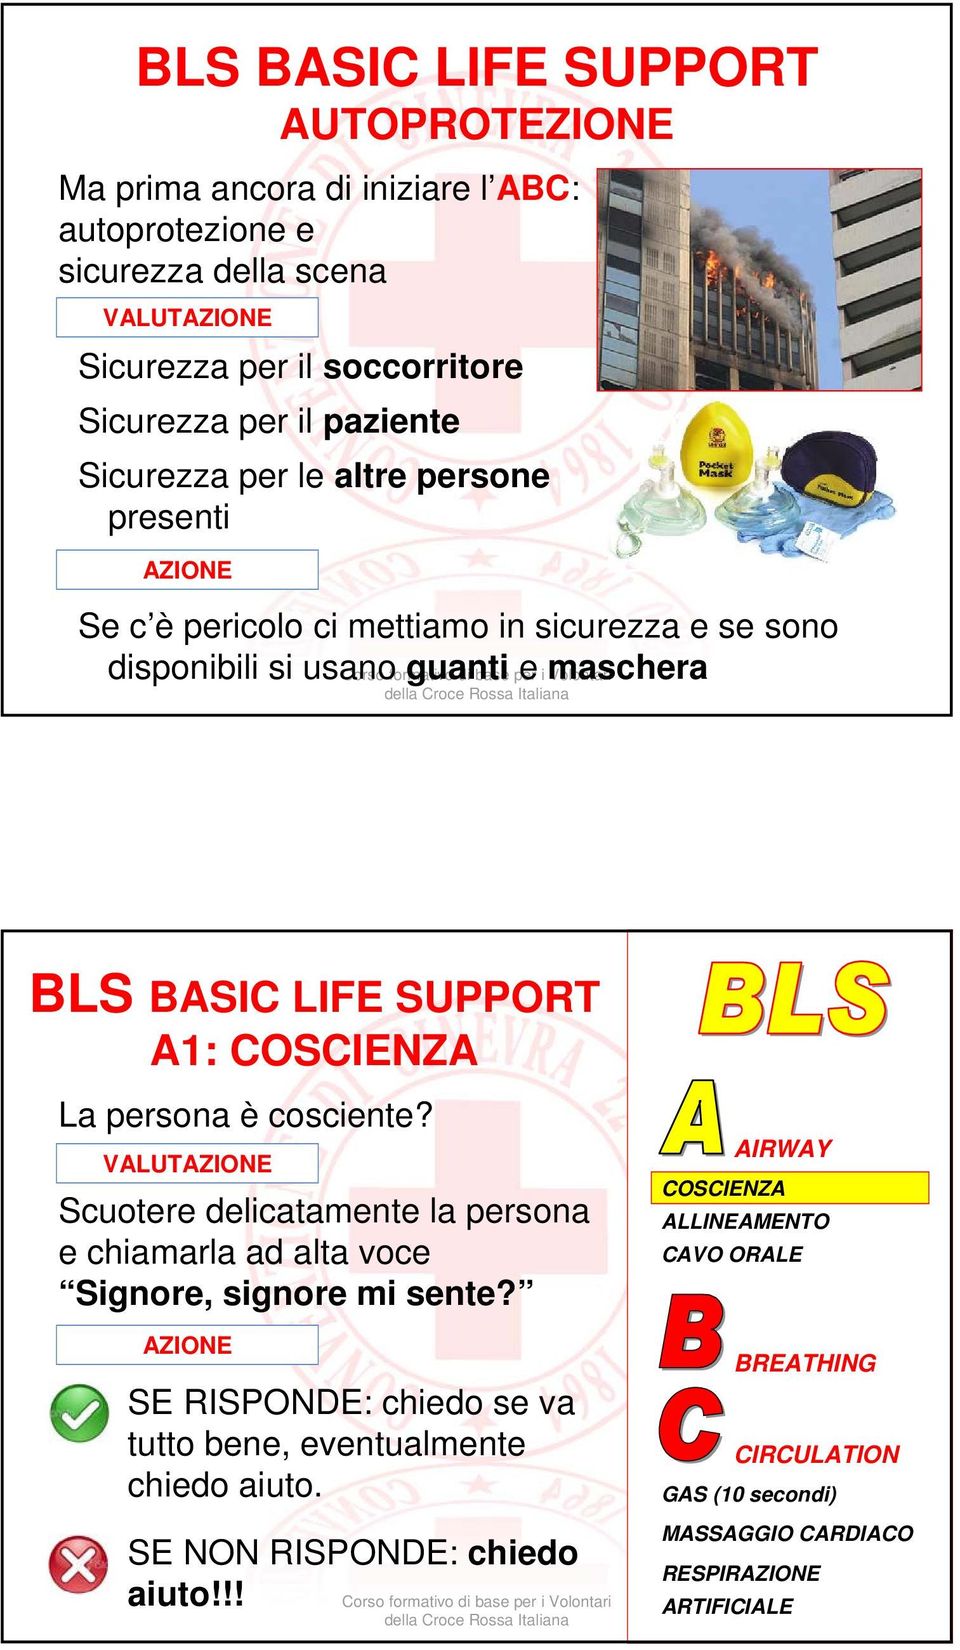 disponibili si usano guanti e maschera BLS BASIC LIFE SUPPORT A1: La persona è cosciente?